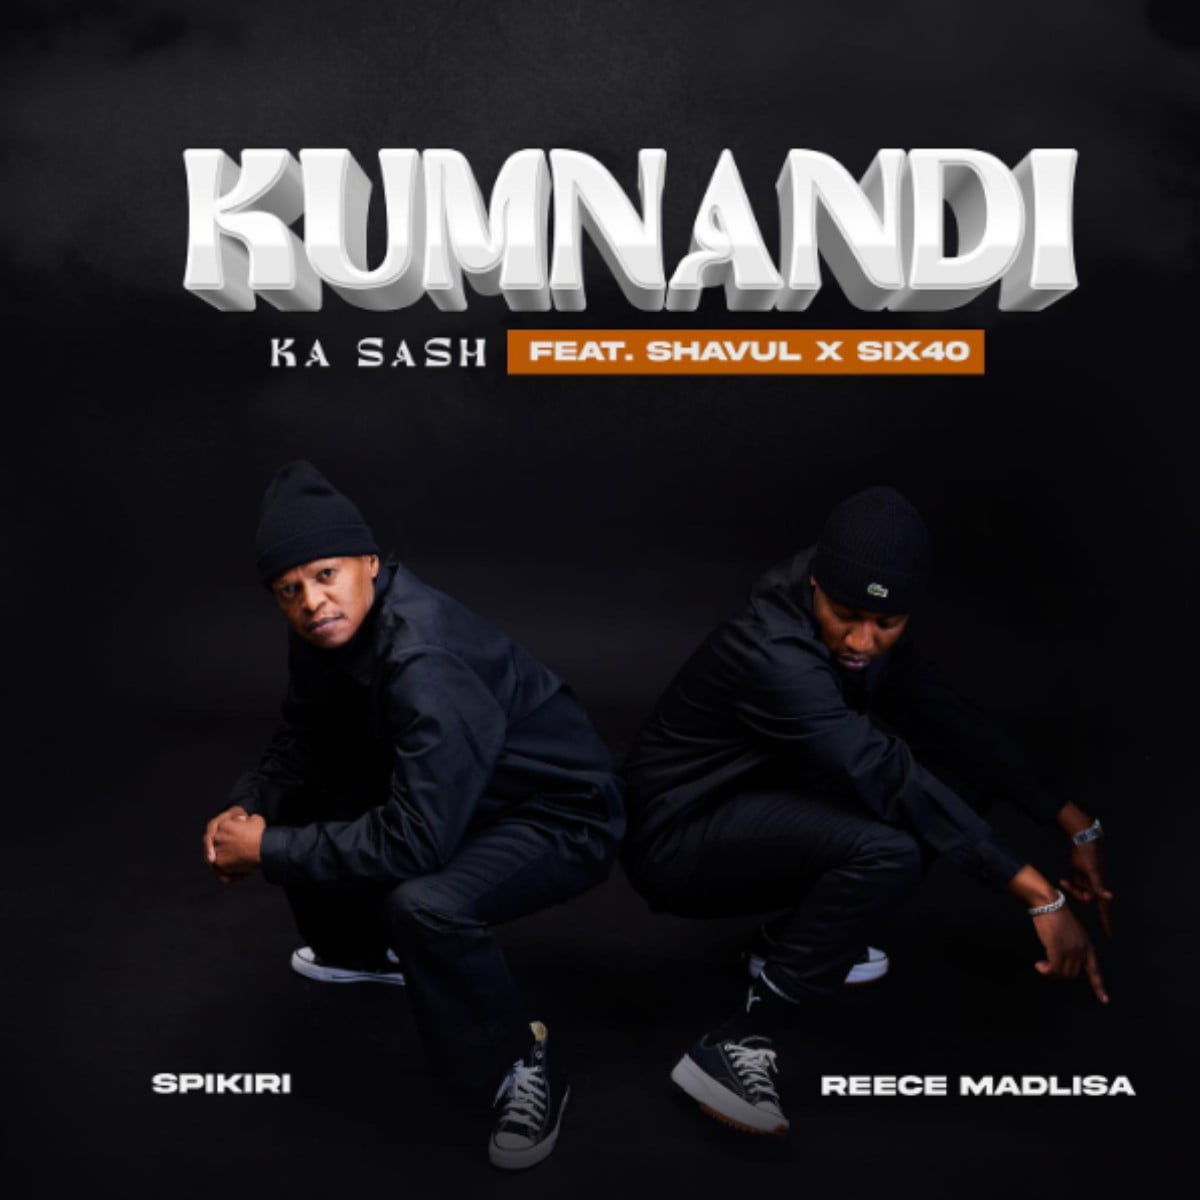 Reece Madlisa & Spikiri - Kumnandi Ka Sash ft. Shavul & Six40 mp3 download free lyrics